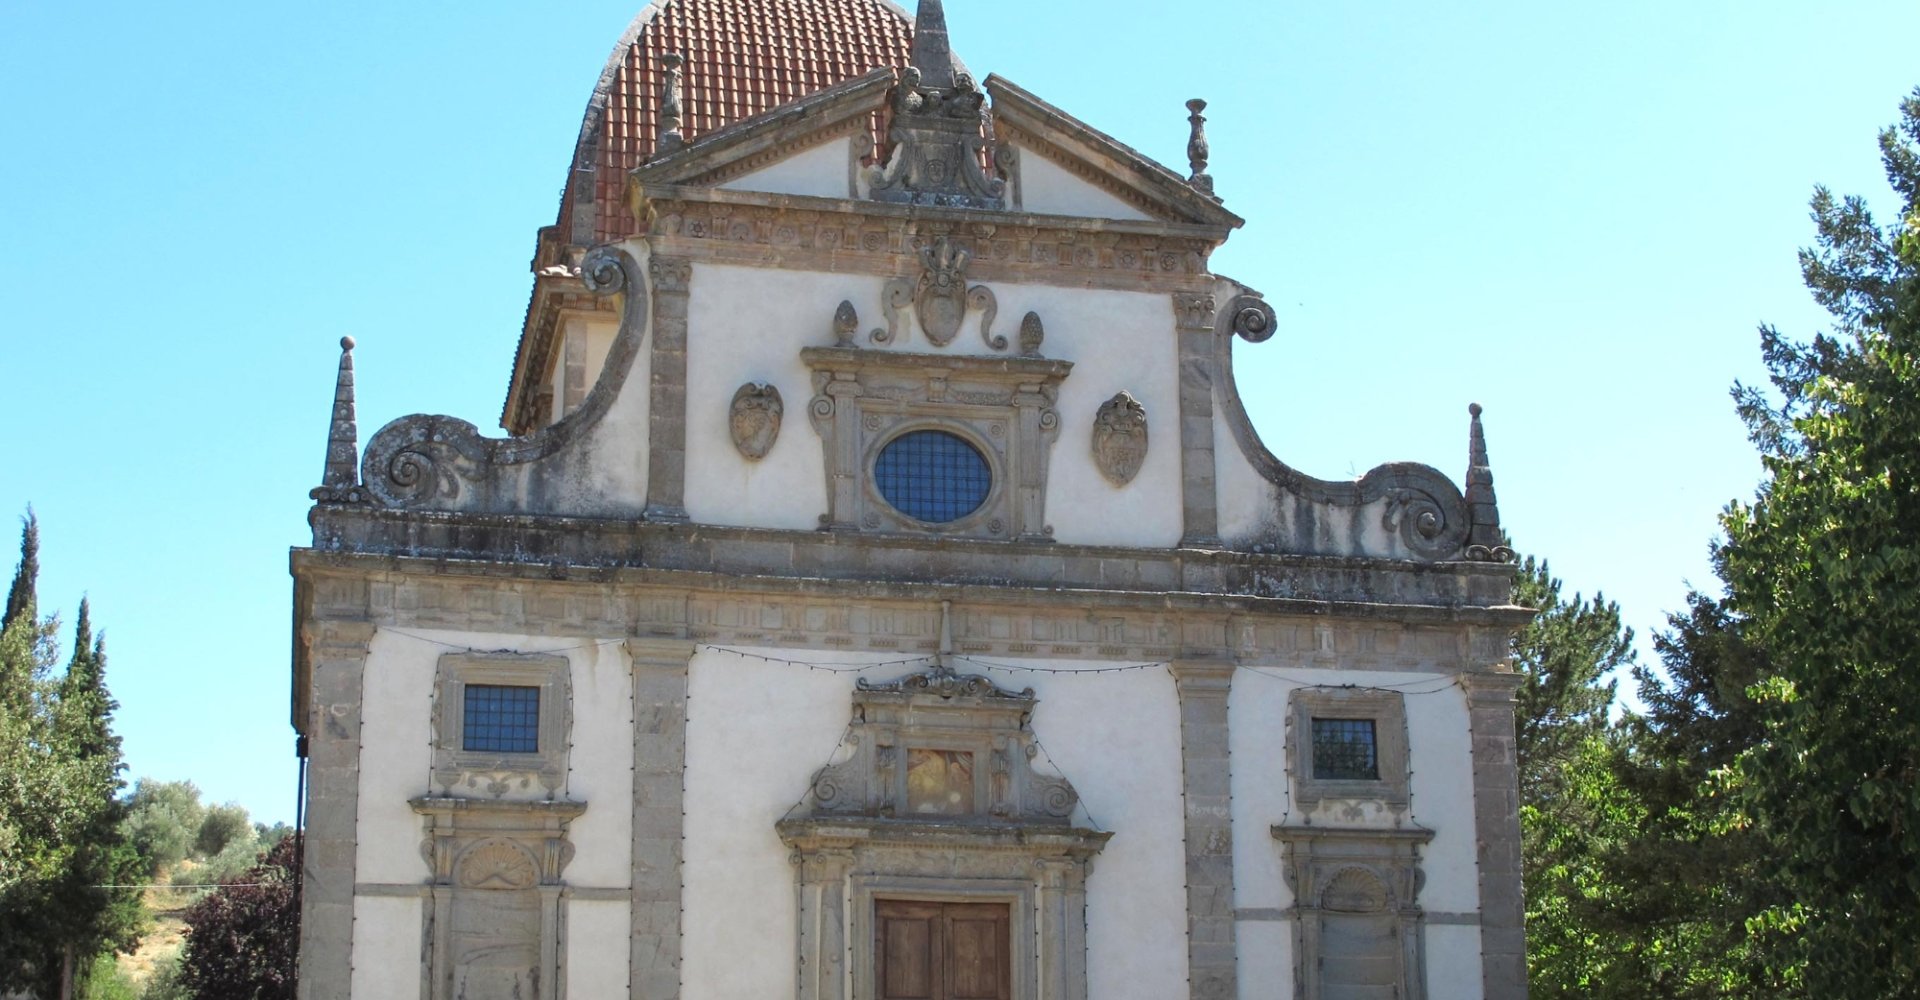 The Sanctuary of Madonna della Carità - Seggiano